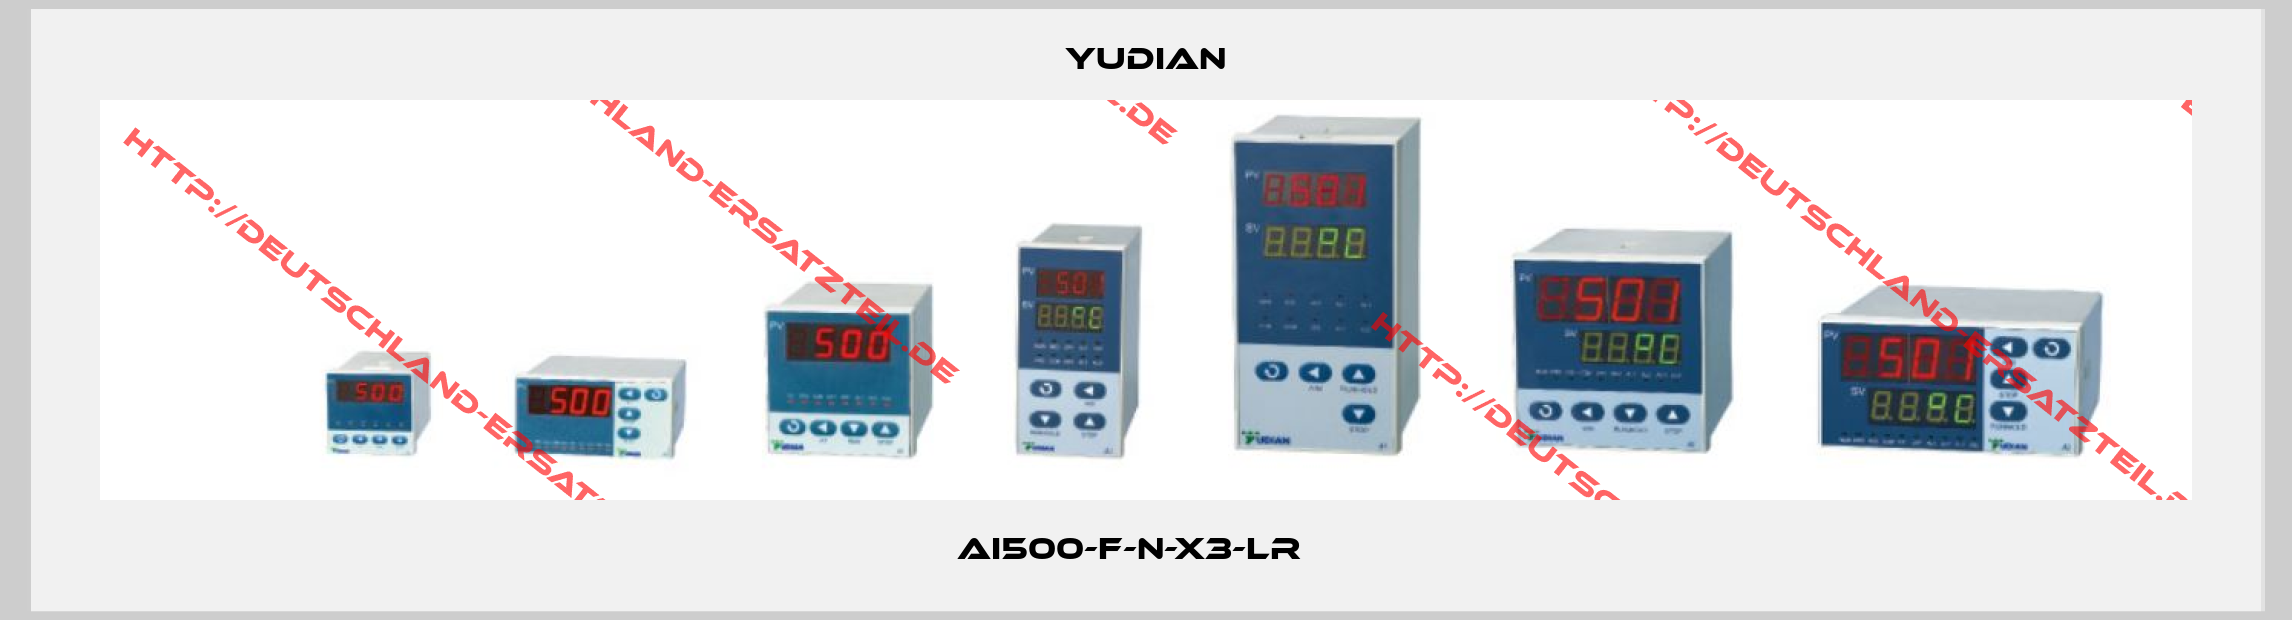 Yudian-AI500-F-N-X3-LR   